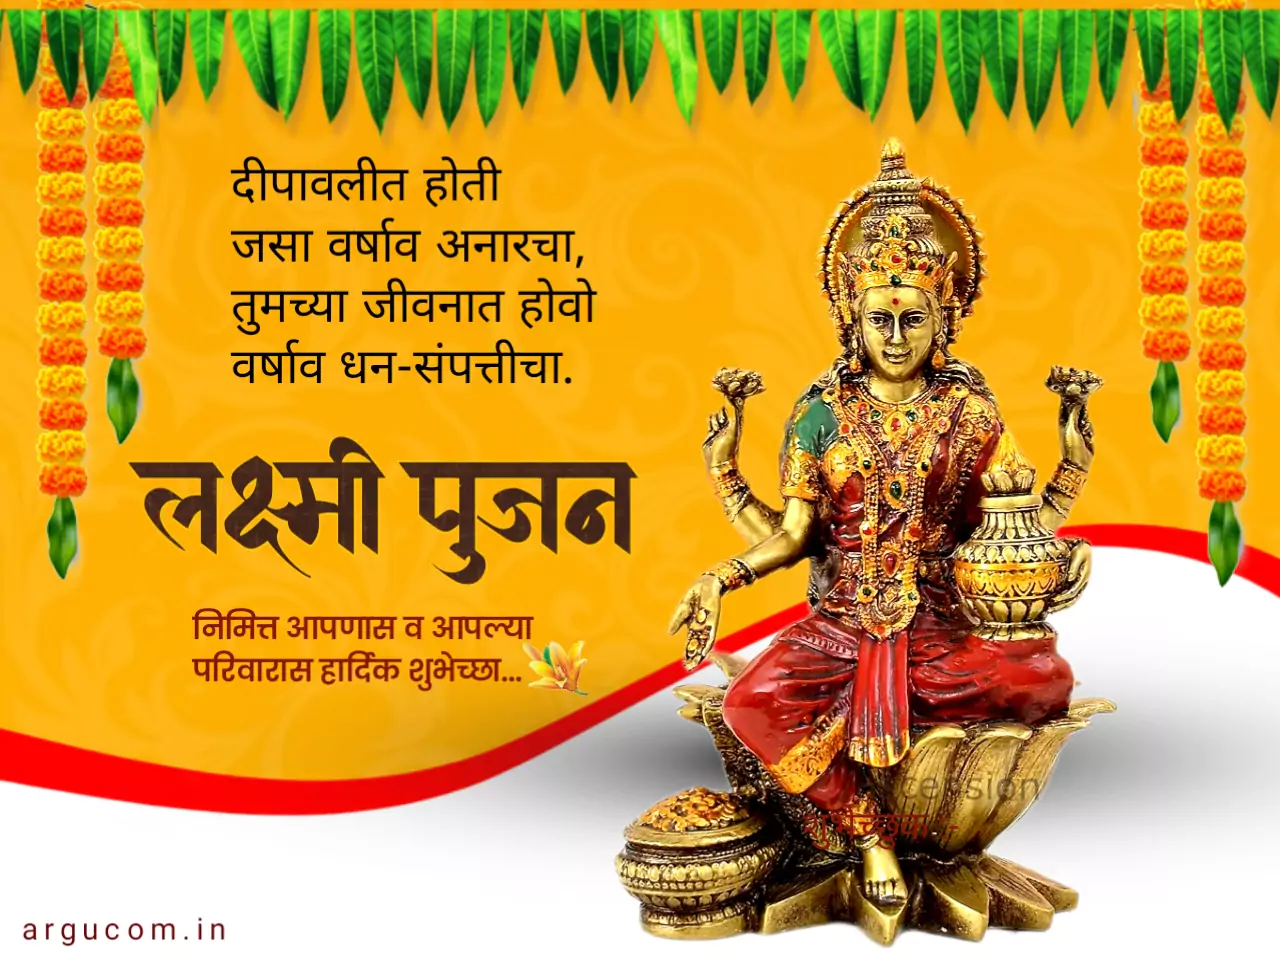 laxmi puja wishes in marathi images 